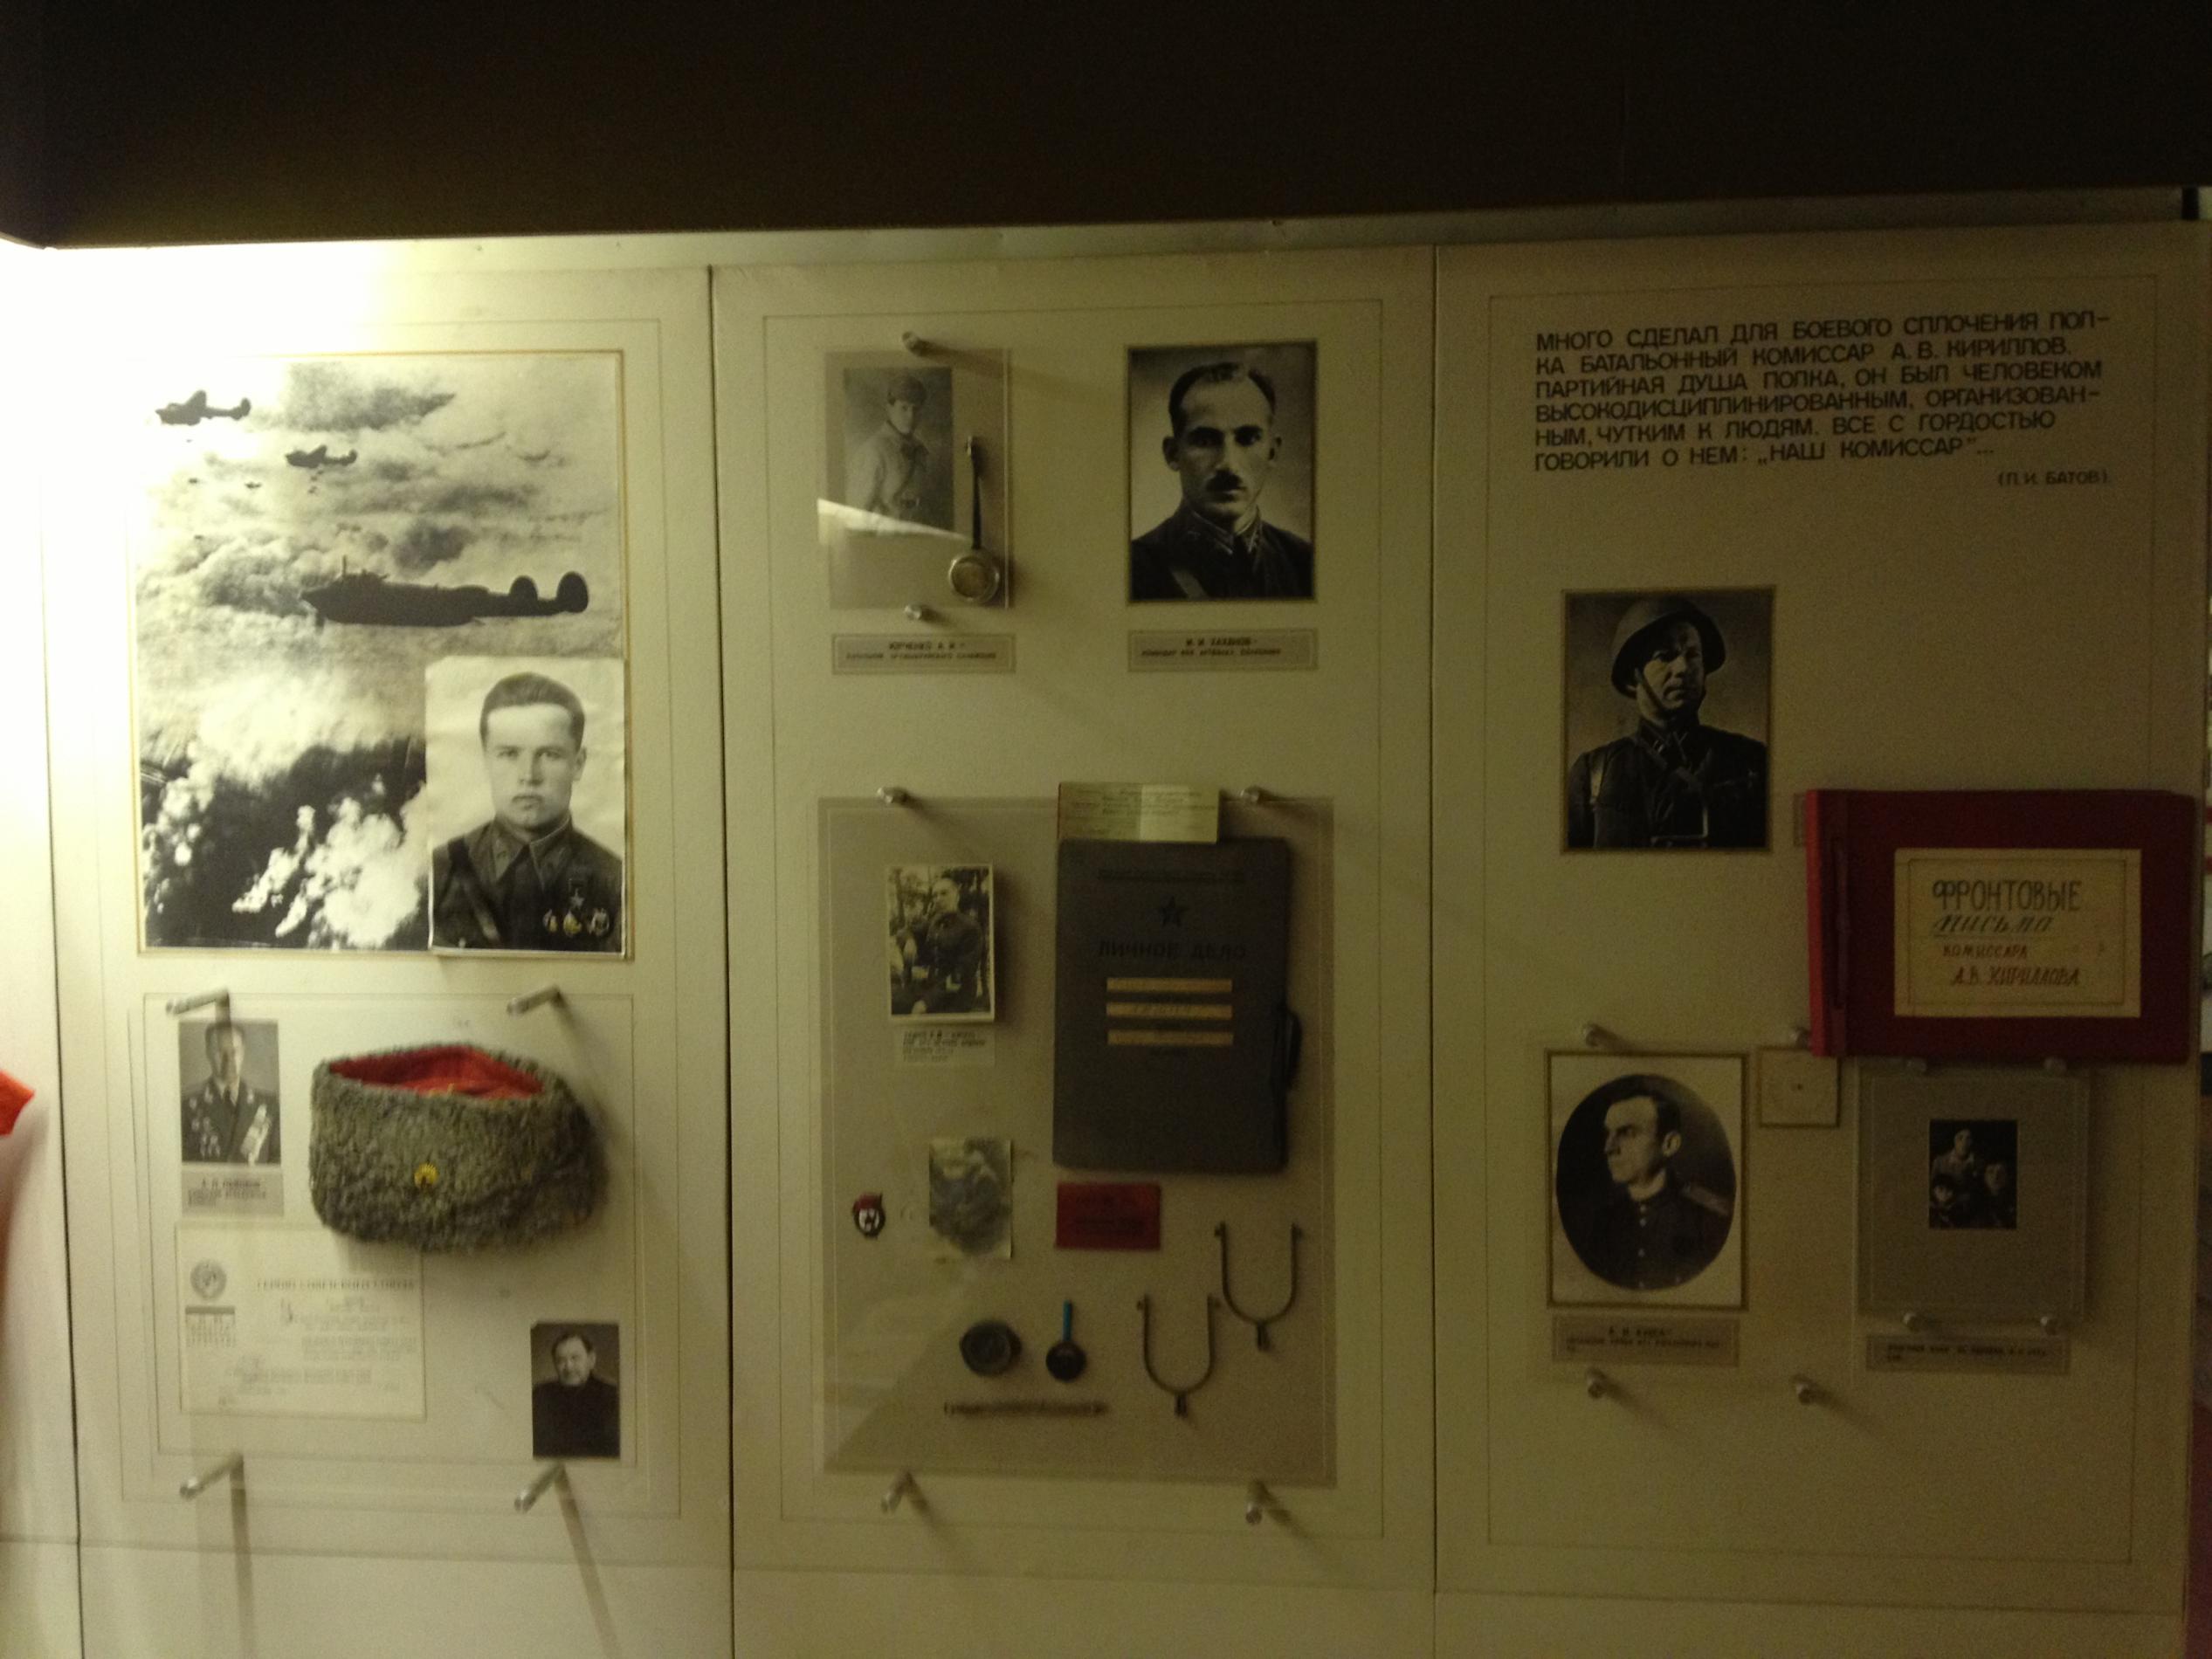 Народный музей 51 Армии, с. Клепинино, Крым